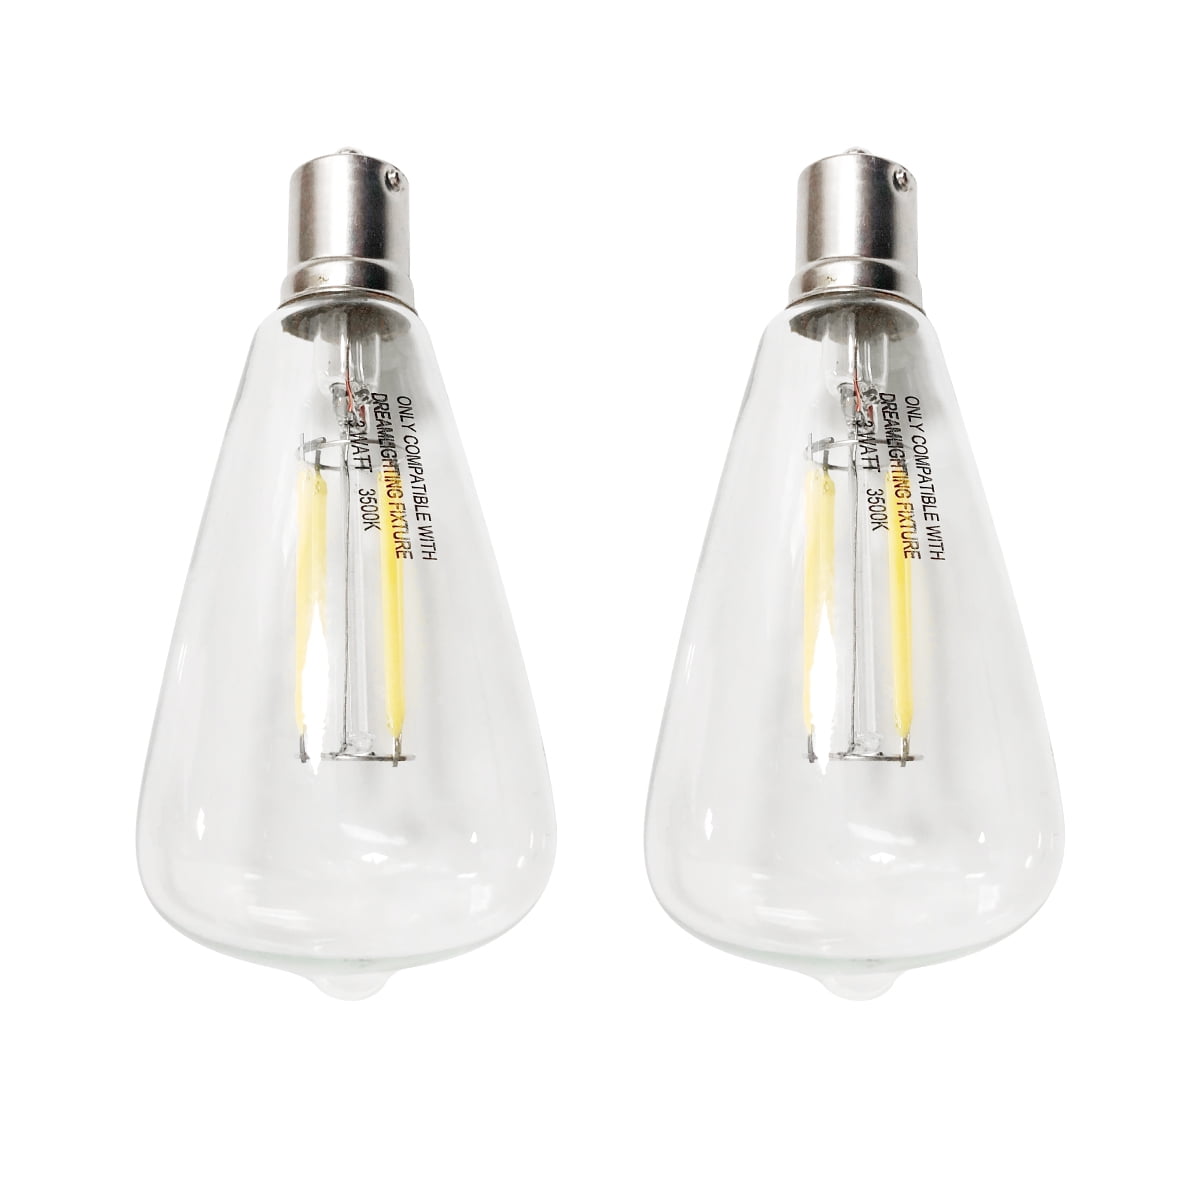 Dream Lighting LED Edison Bulb 3W, 150 Lumens, Warm White 3000K, LED Vintage Replace Globe Dinette Light Fixtures, Pack of 2